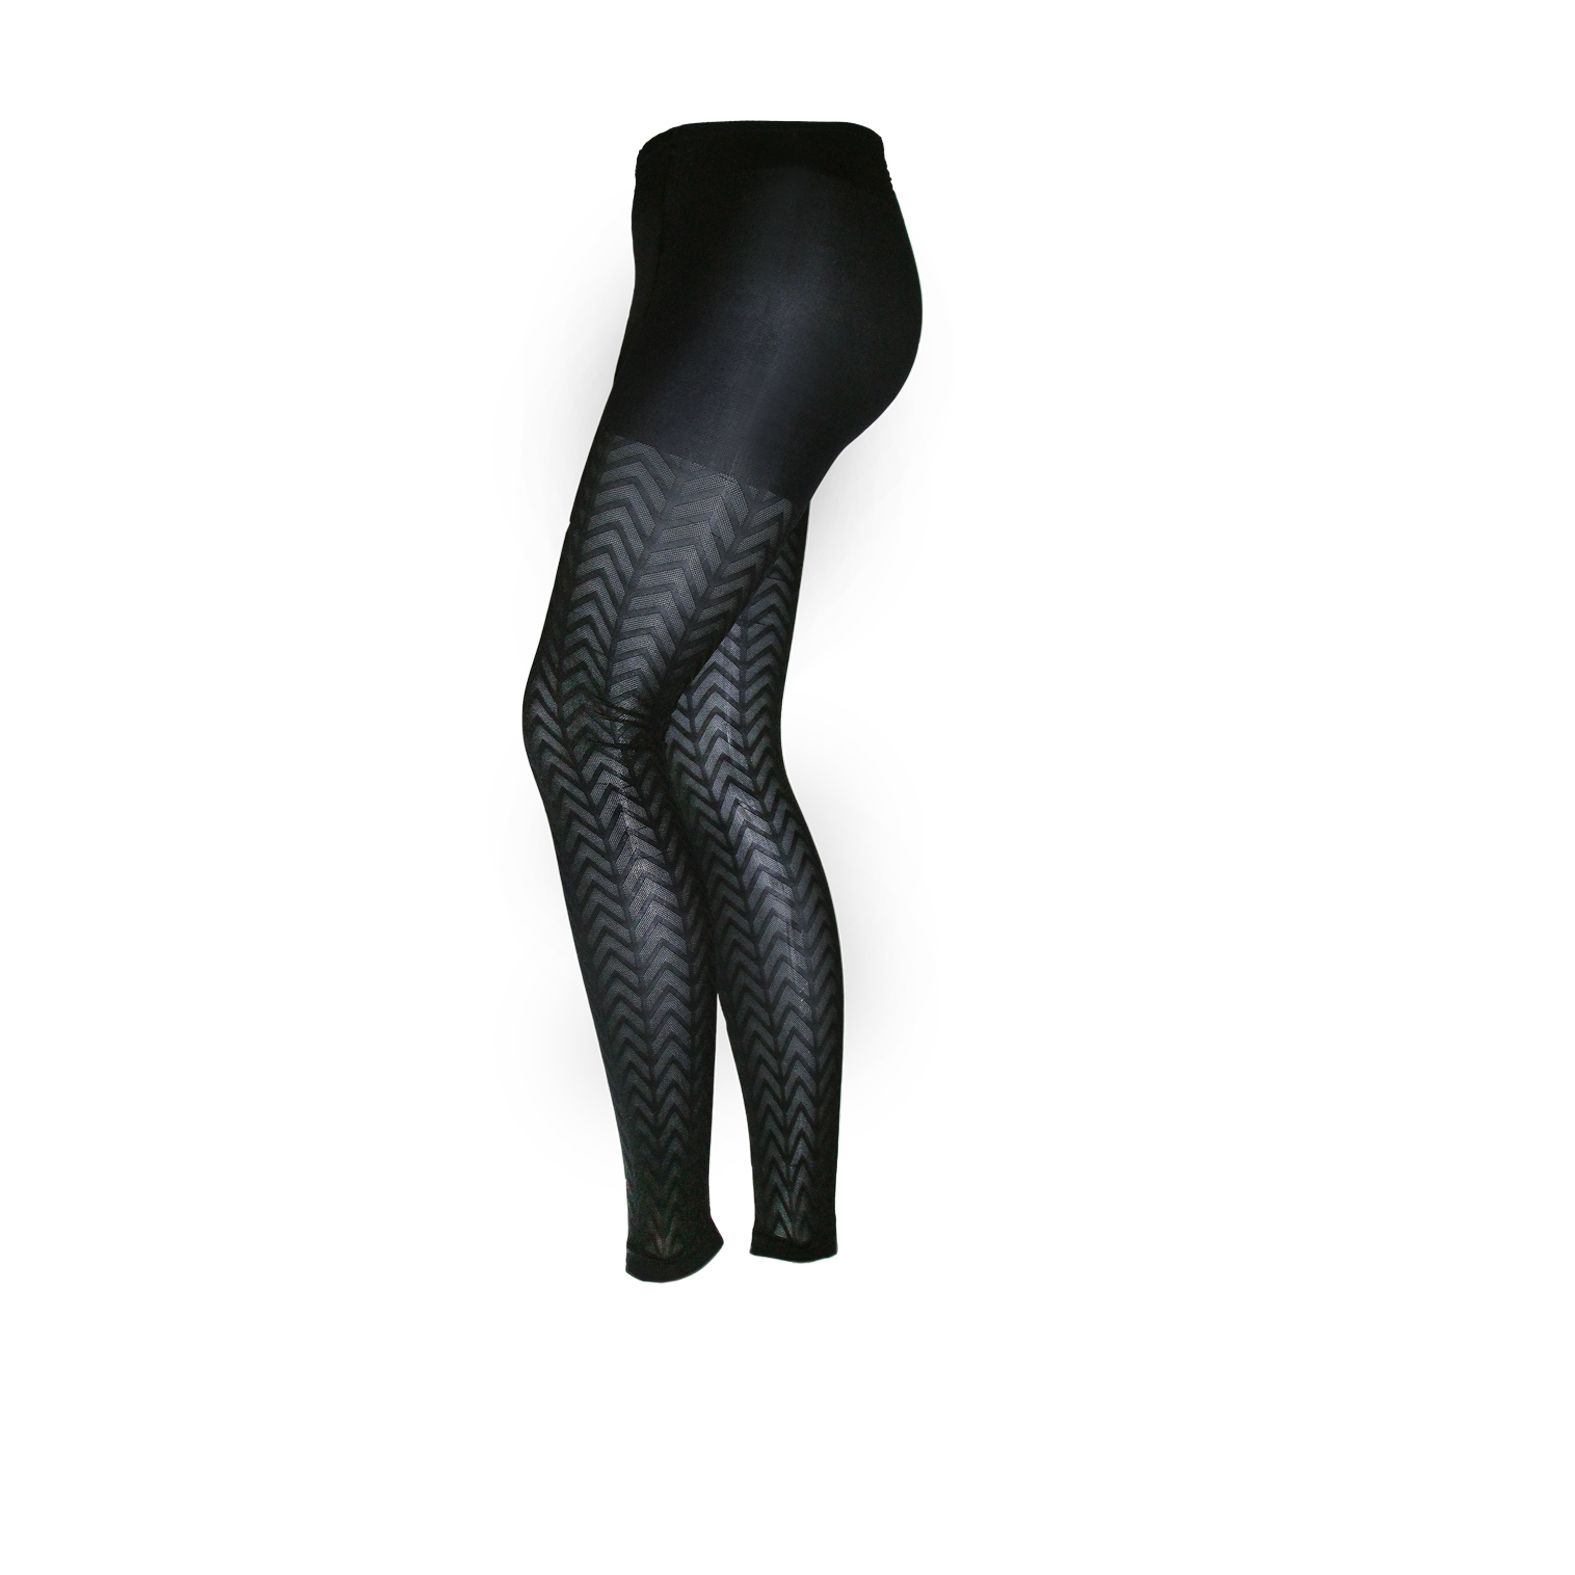 ساق شلواری زنانه اکسلنس مدل danoub -  - 2